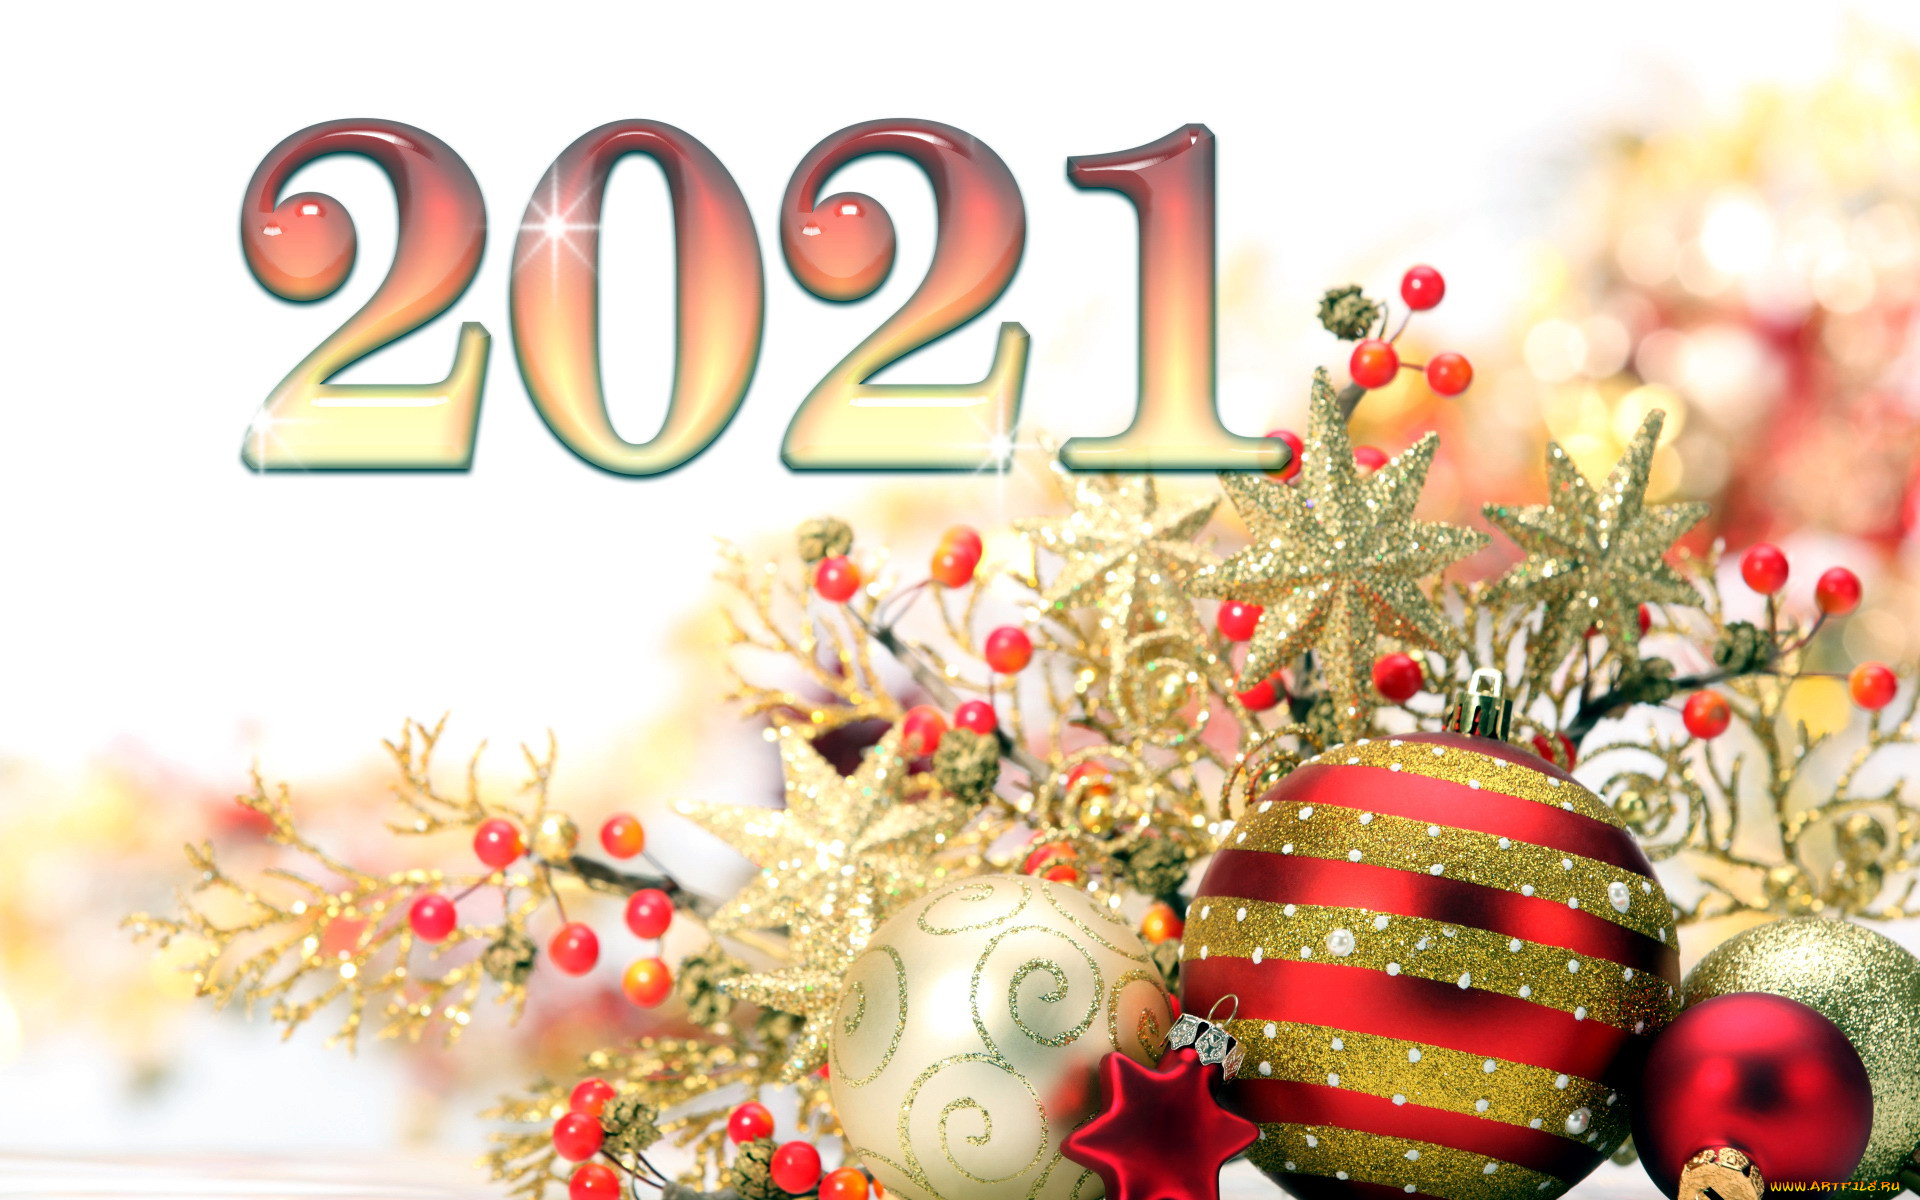 Новый год 2021 дней. Обои на новый год 2021. Новогодние картинки 2021 год. Новогодняя Москва открытка. Картинки с днём нового года.